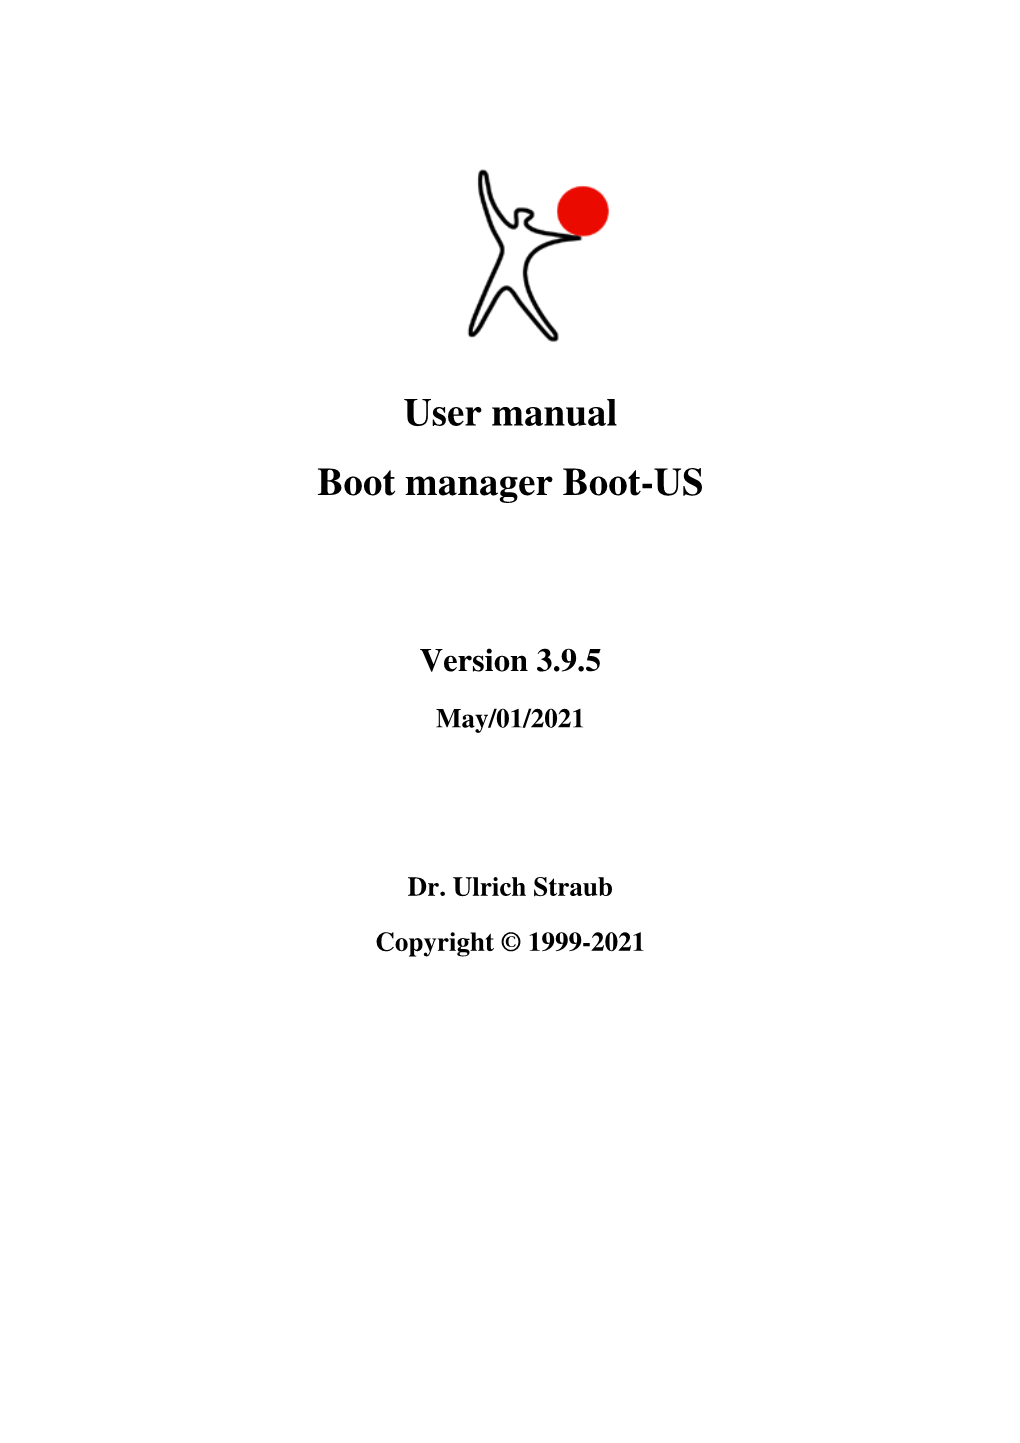 User Manual Boot-US 3.9.5